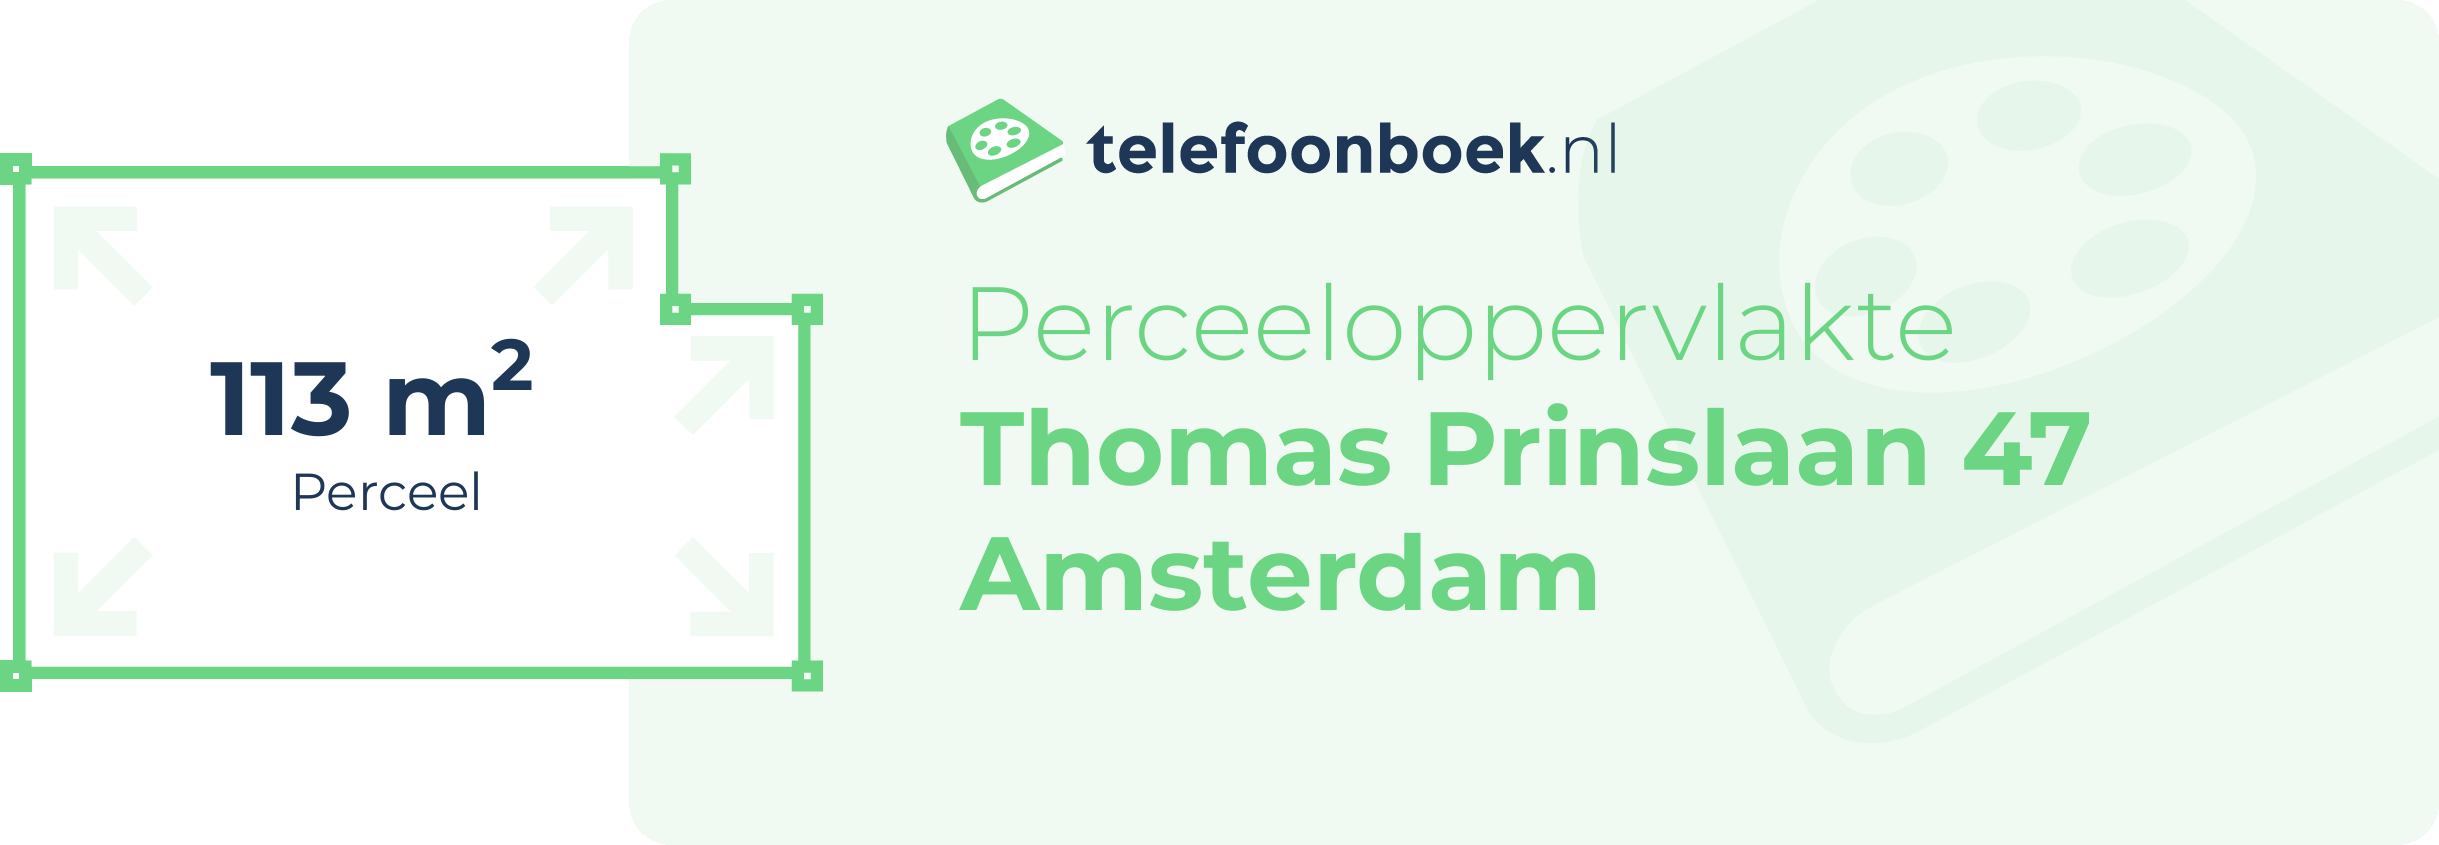 Perceeloppervlakte Thomas Prinslaan 47 Amsterdam